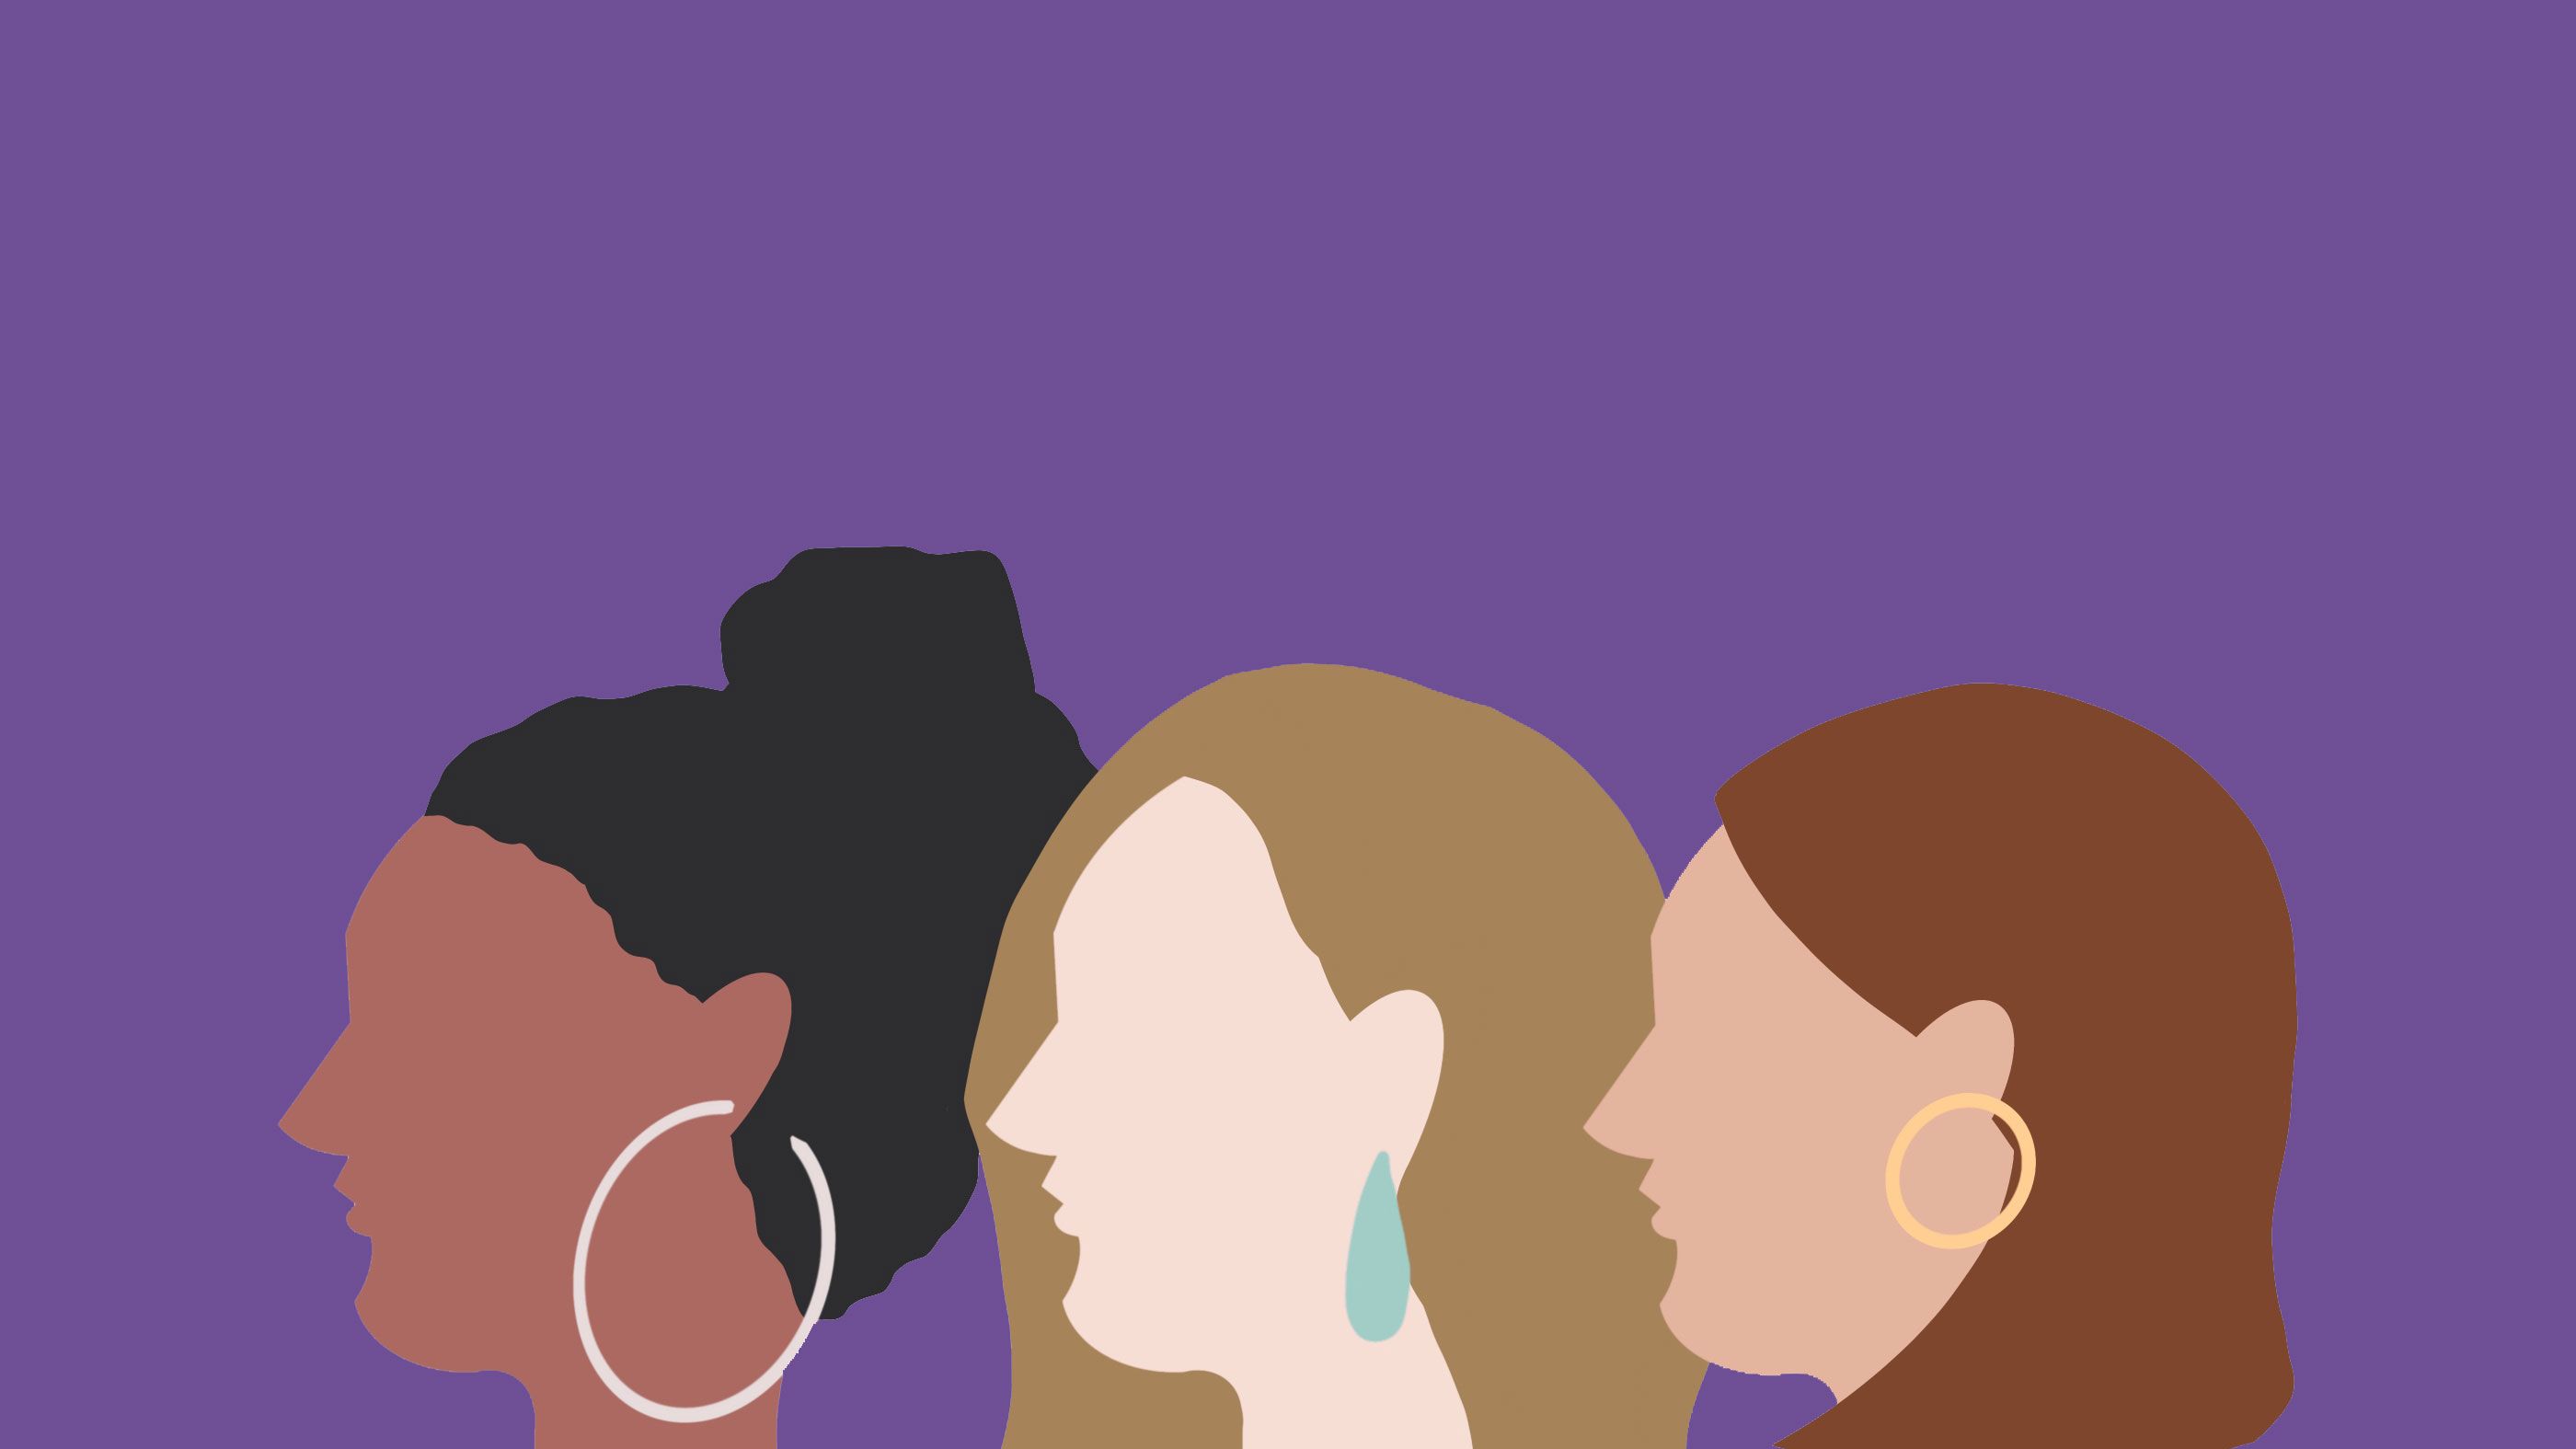 Por qué el color violeta / morado representa el día de la mujer?